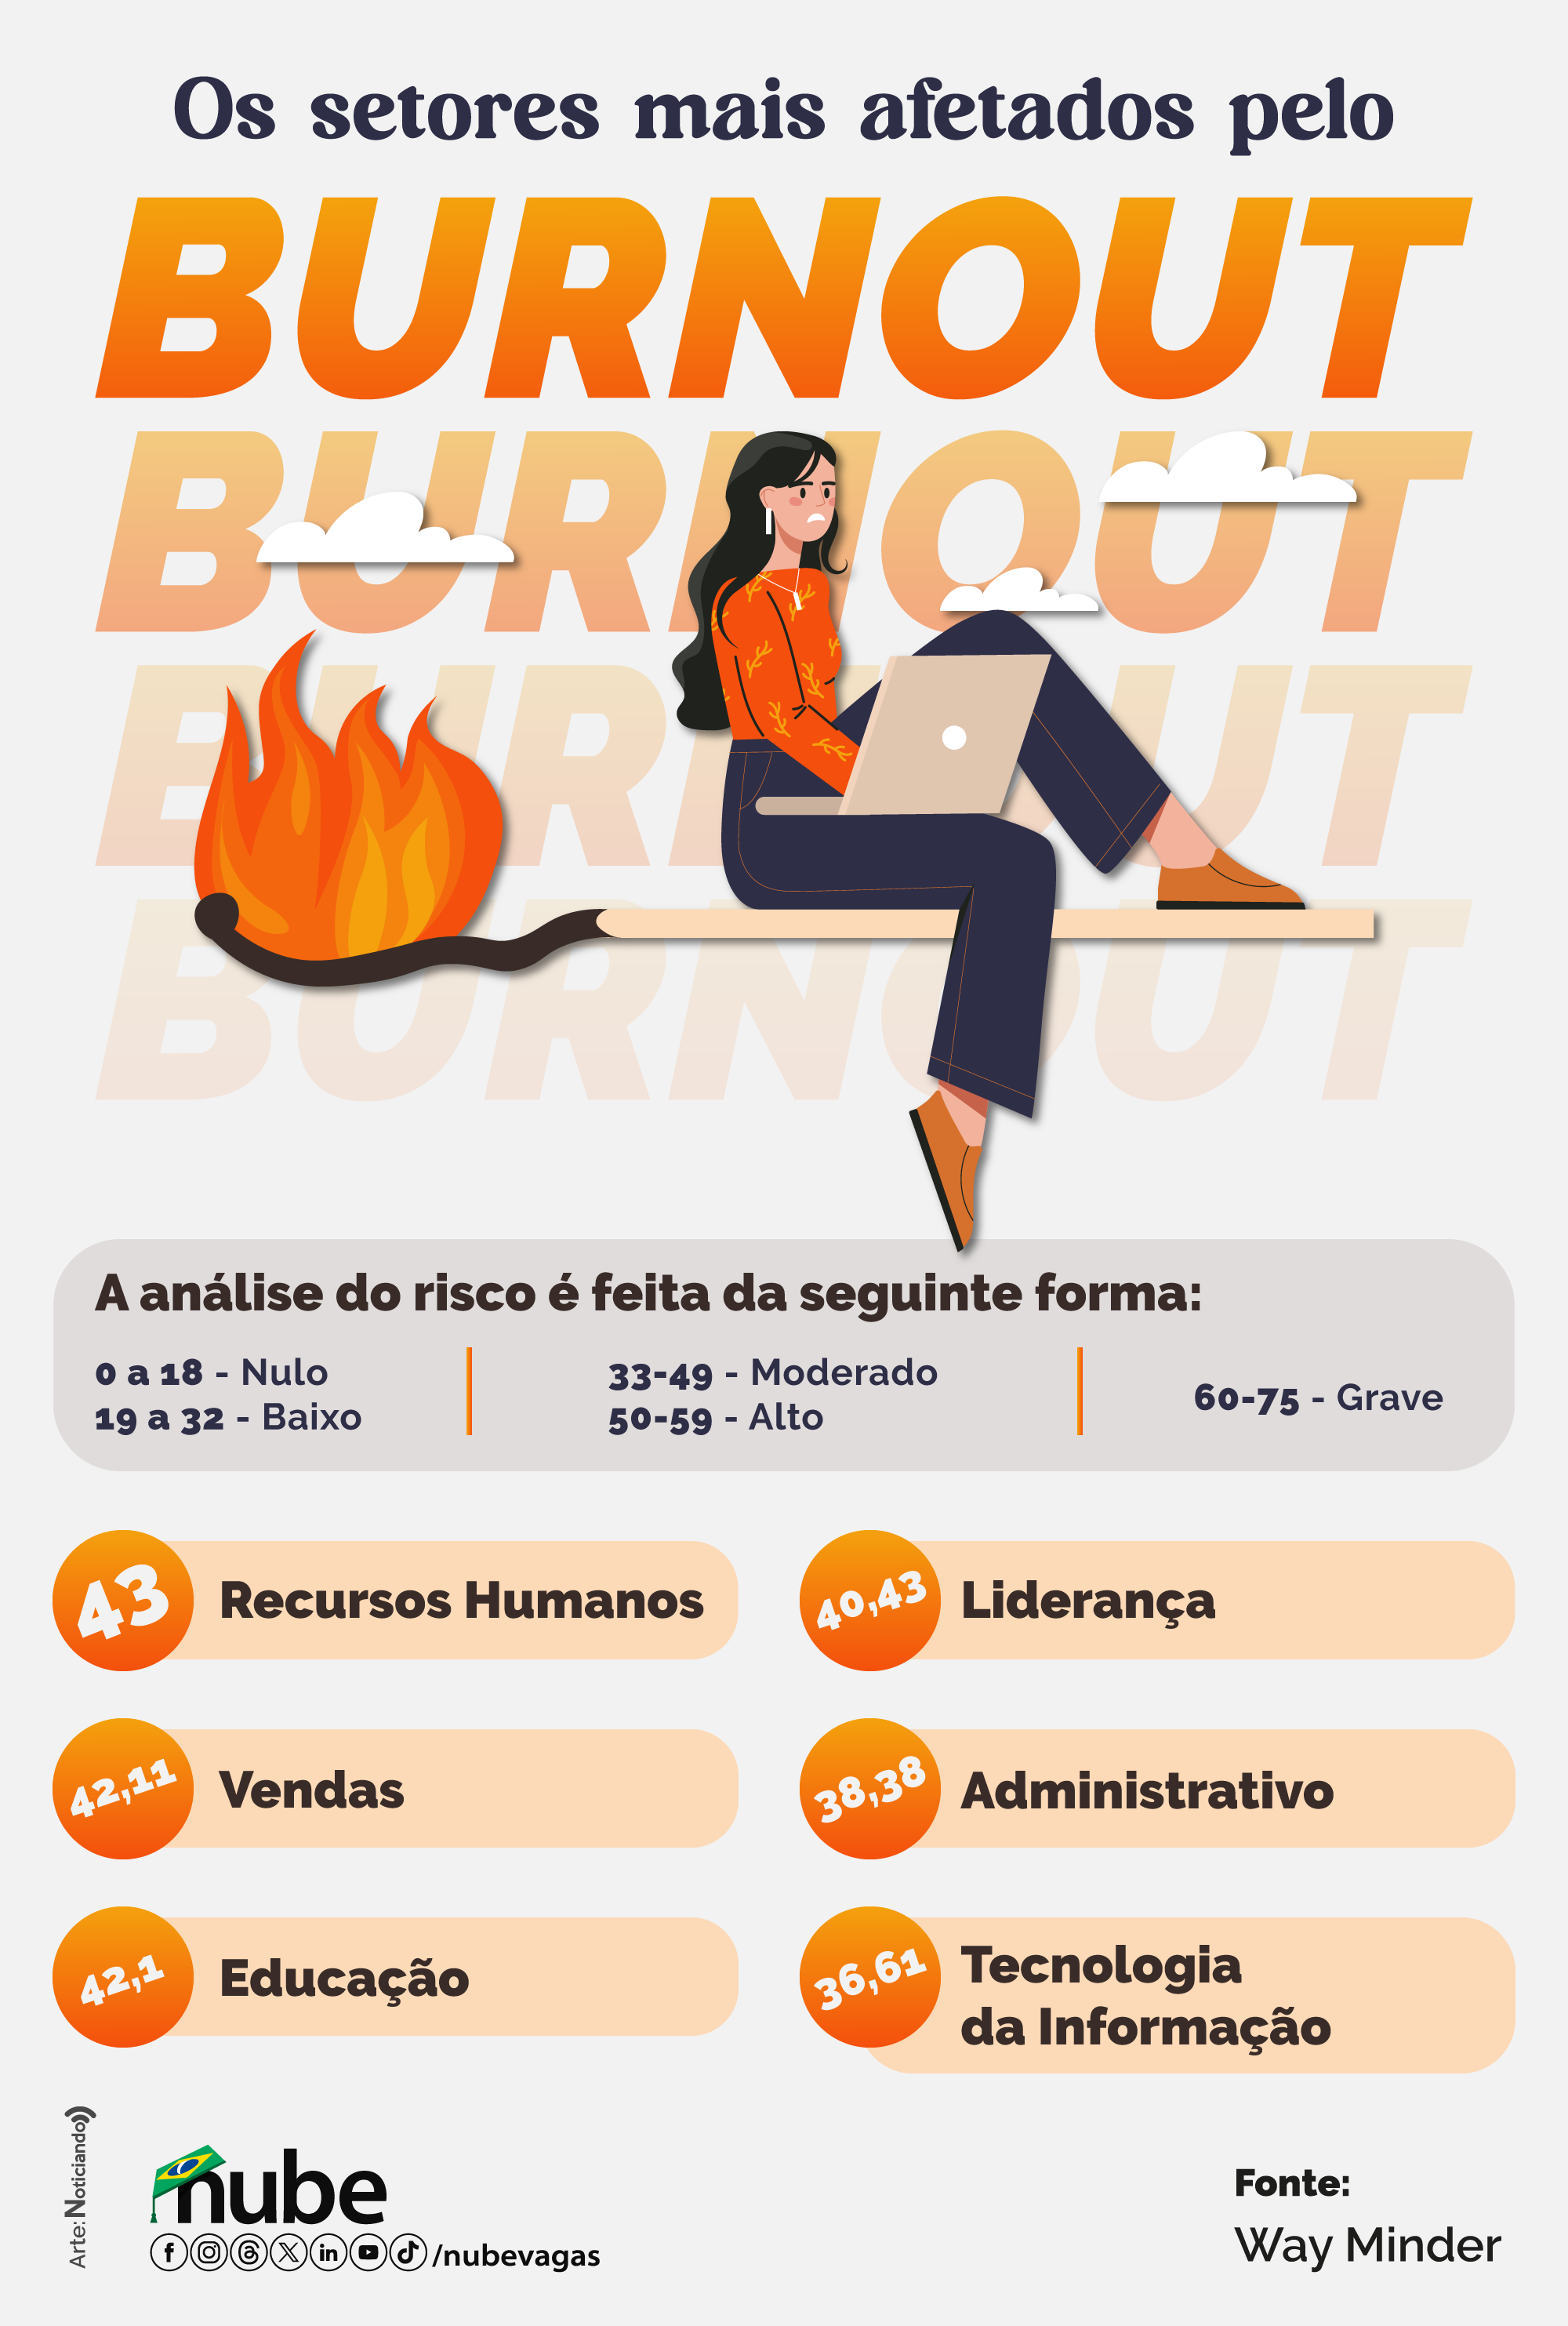 infográfico informando os setores mais afetados pelo burnout